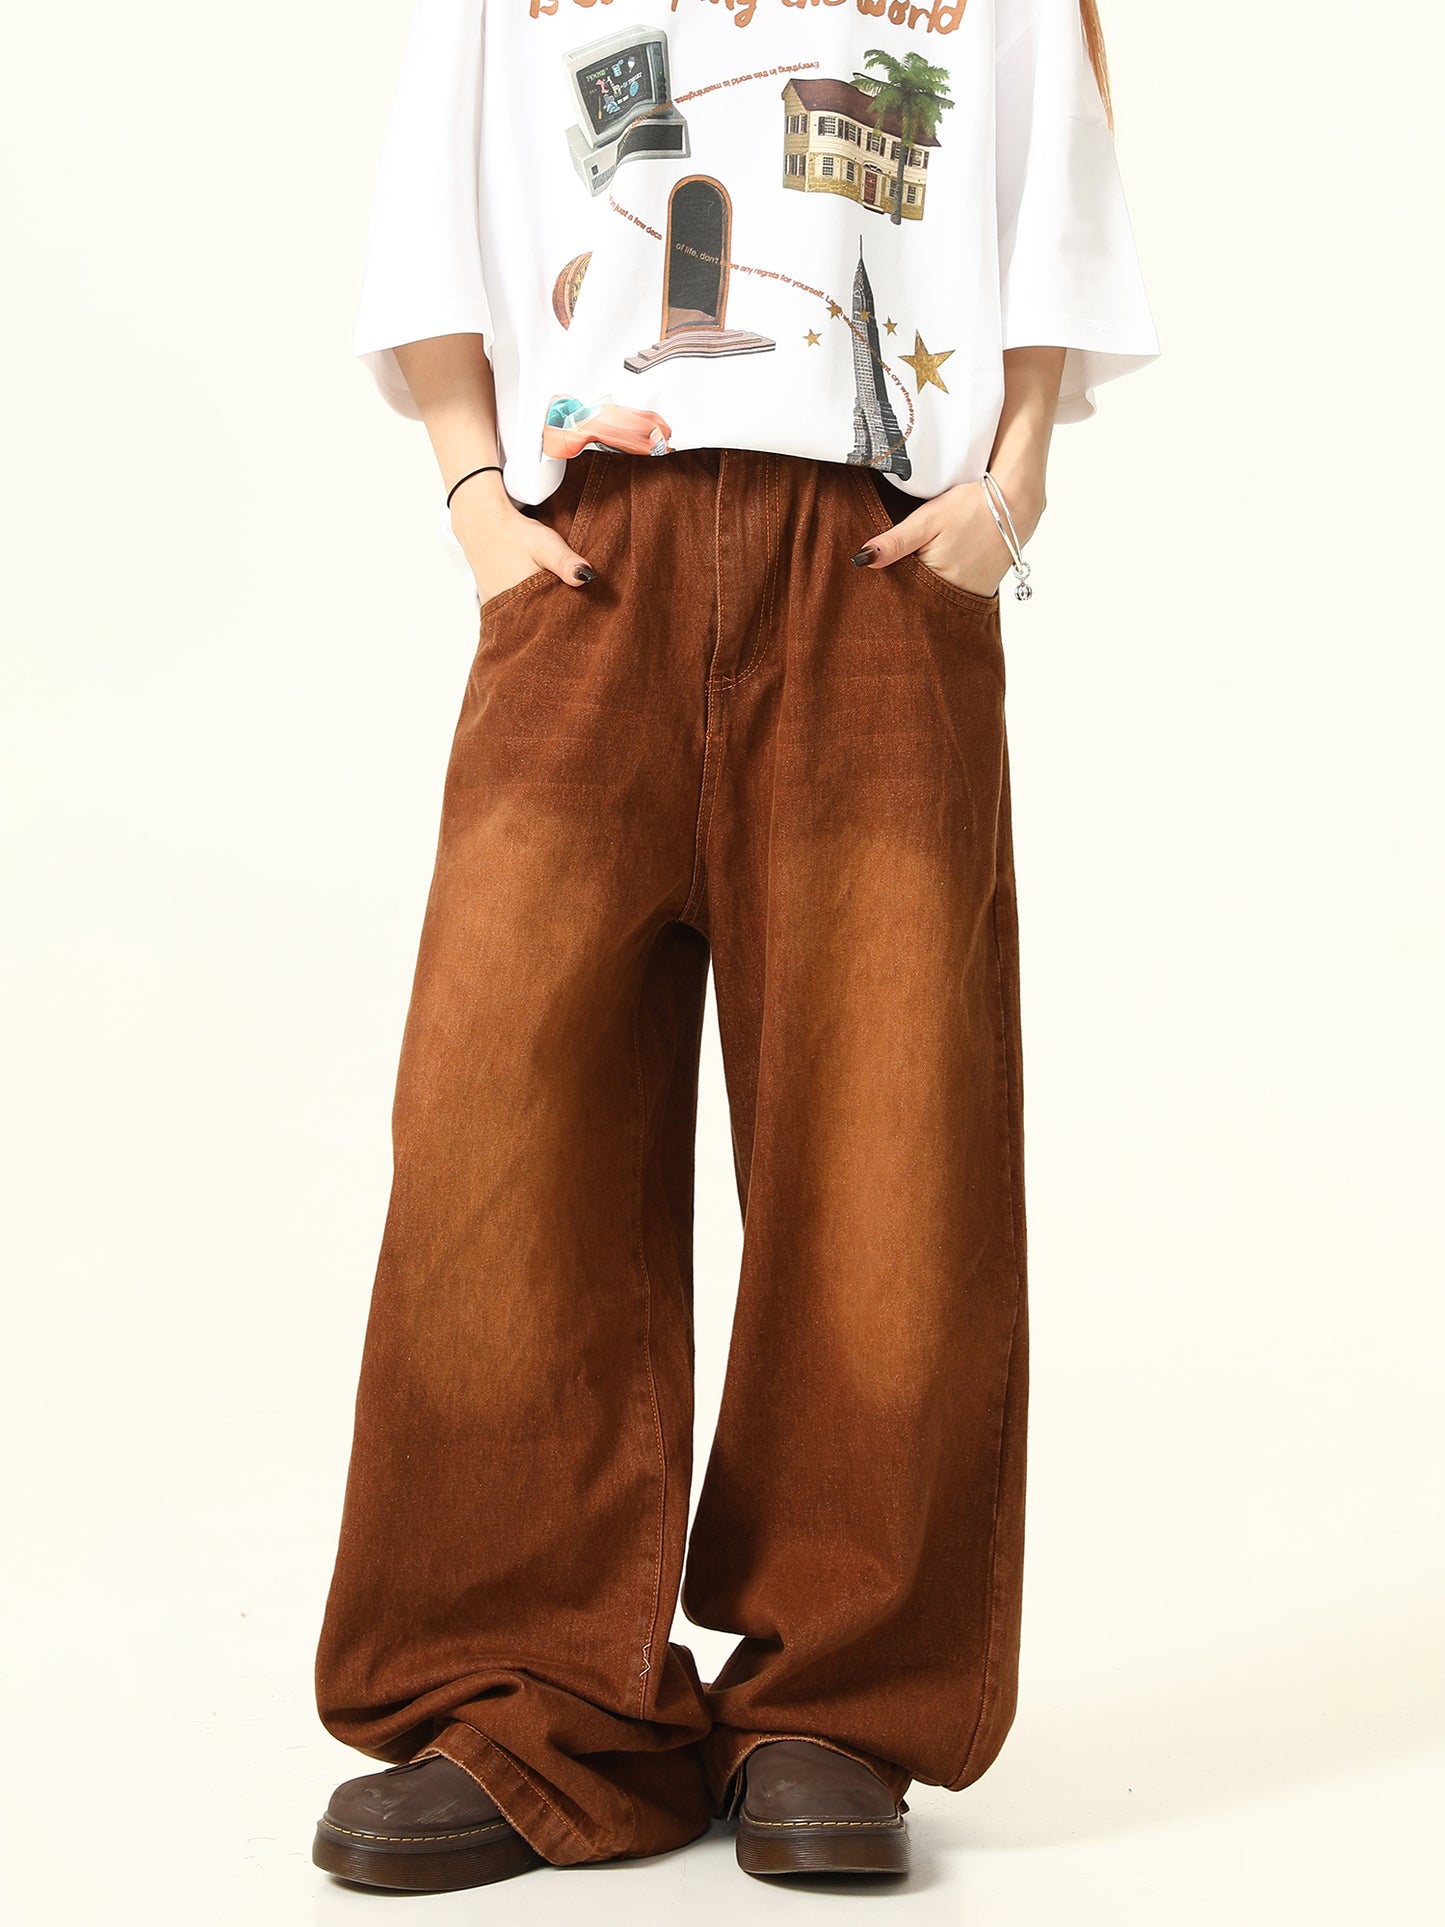 Vintage Maillard Black Brown Pants